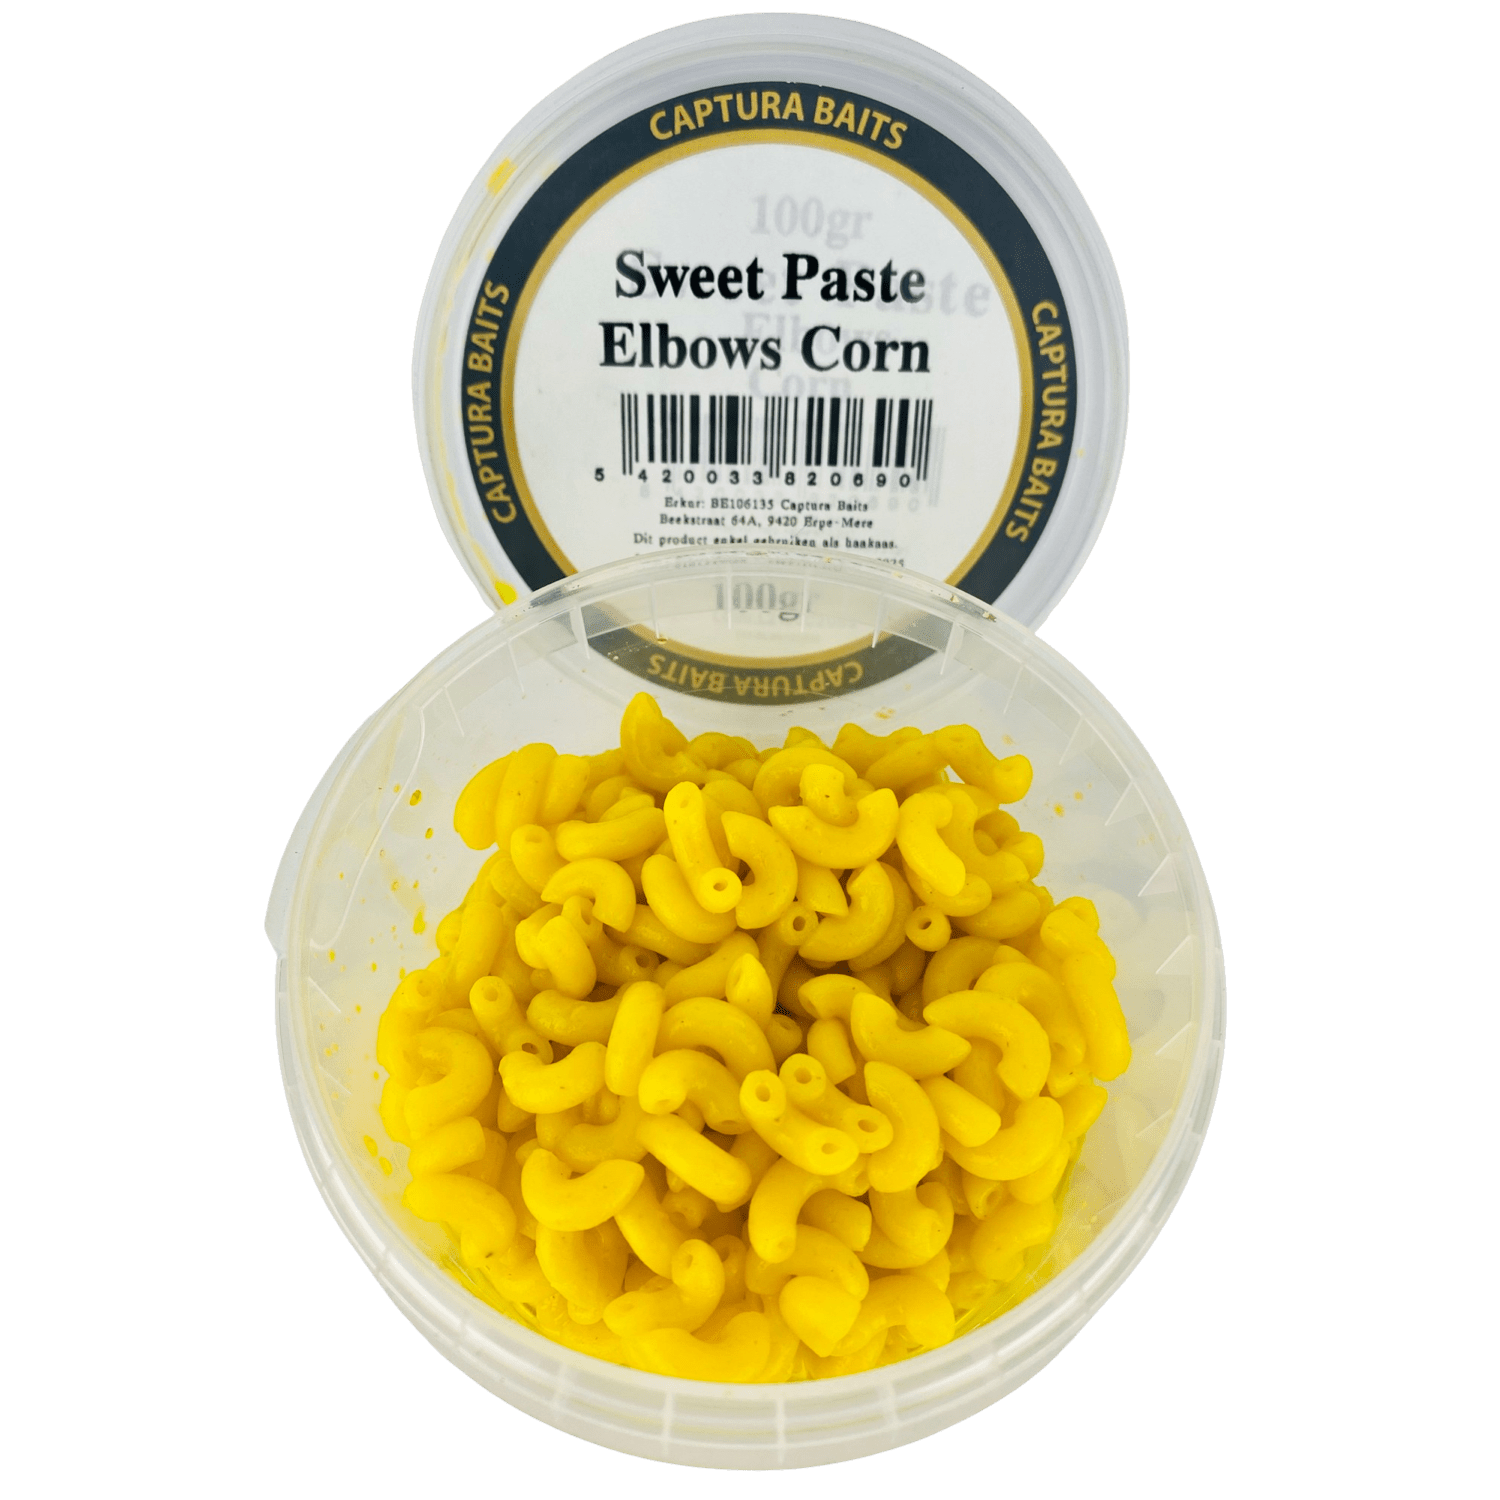 captura baits sweet paste elbows macaroni pasta corn mais